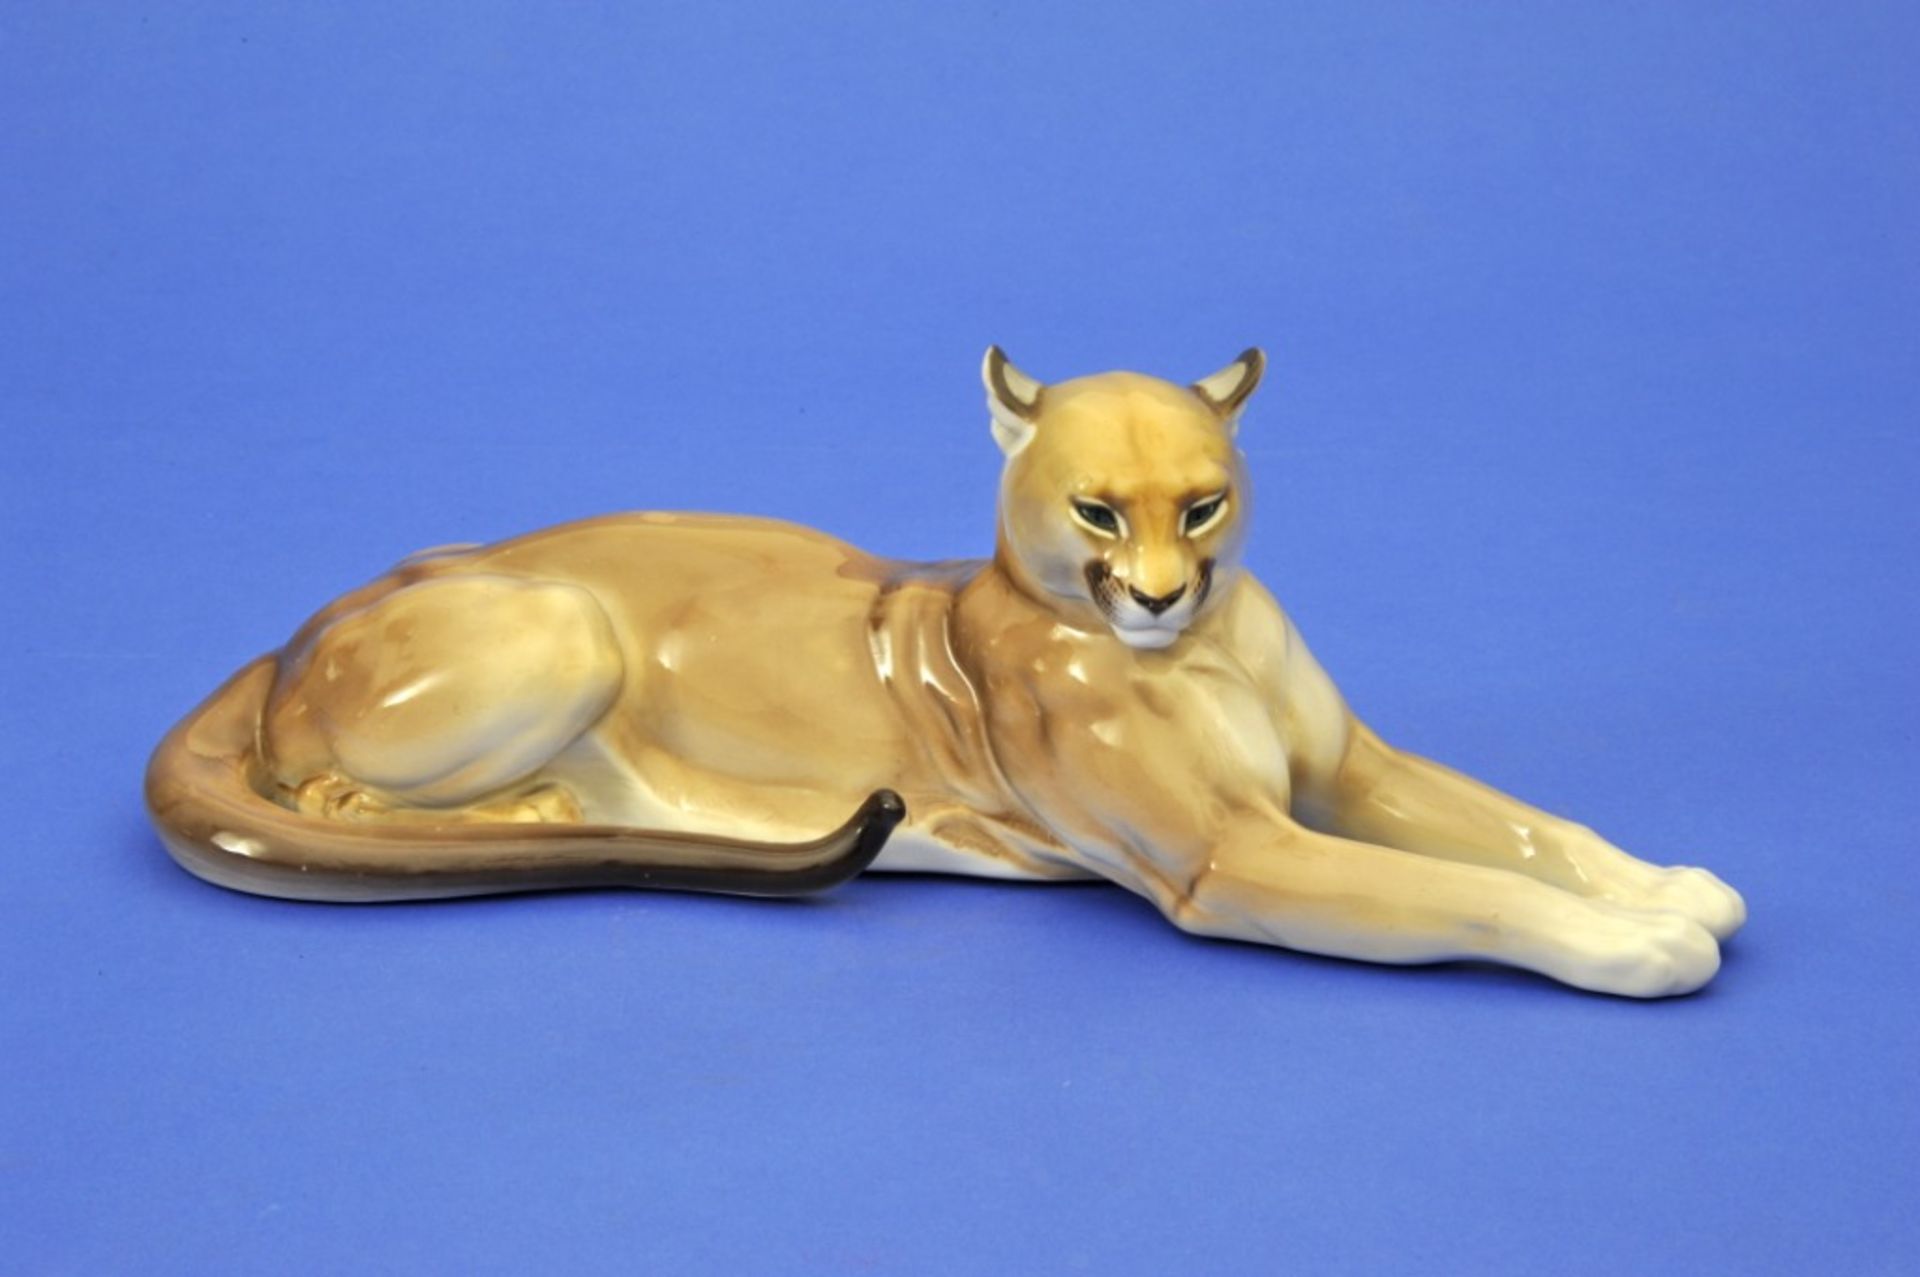 Tierfigur,Liegender Puma, Porzellan, Nymphenburg, um 1900, 40 x 14 cm, 510/140/15Mindestpreis: 800